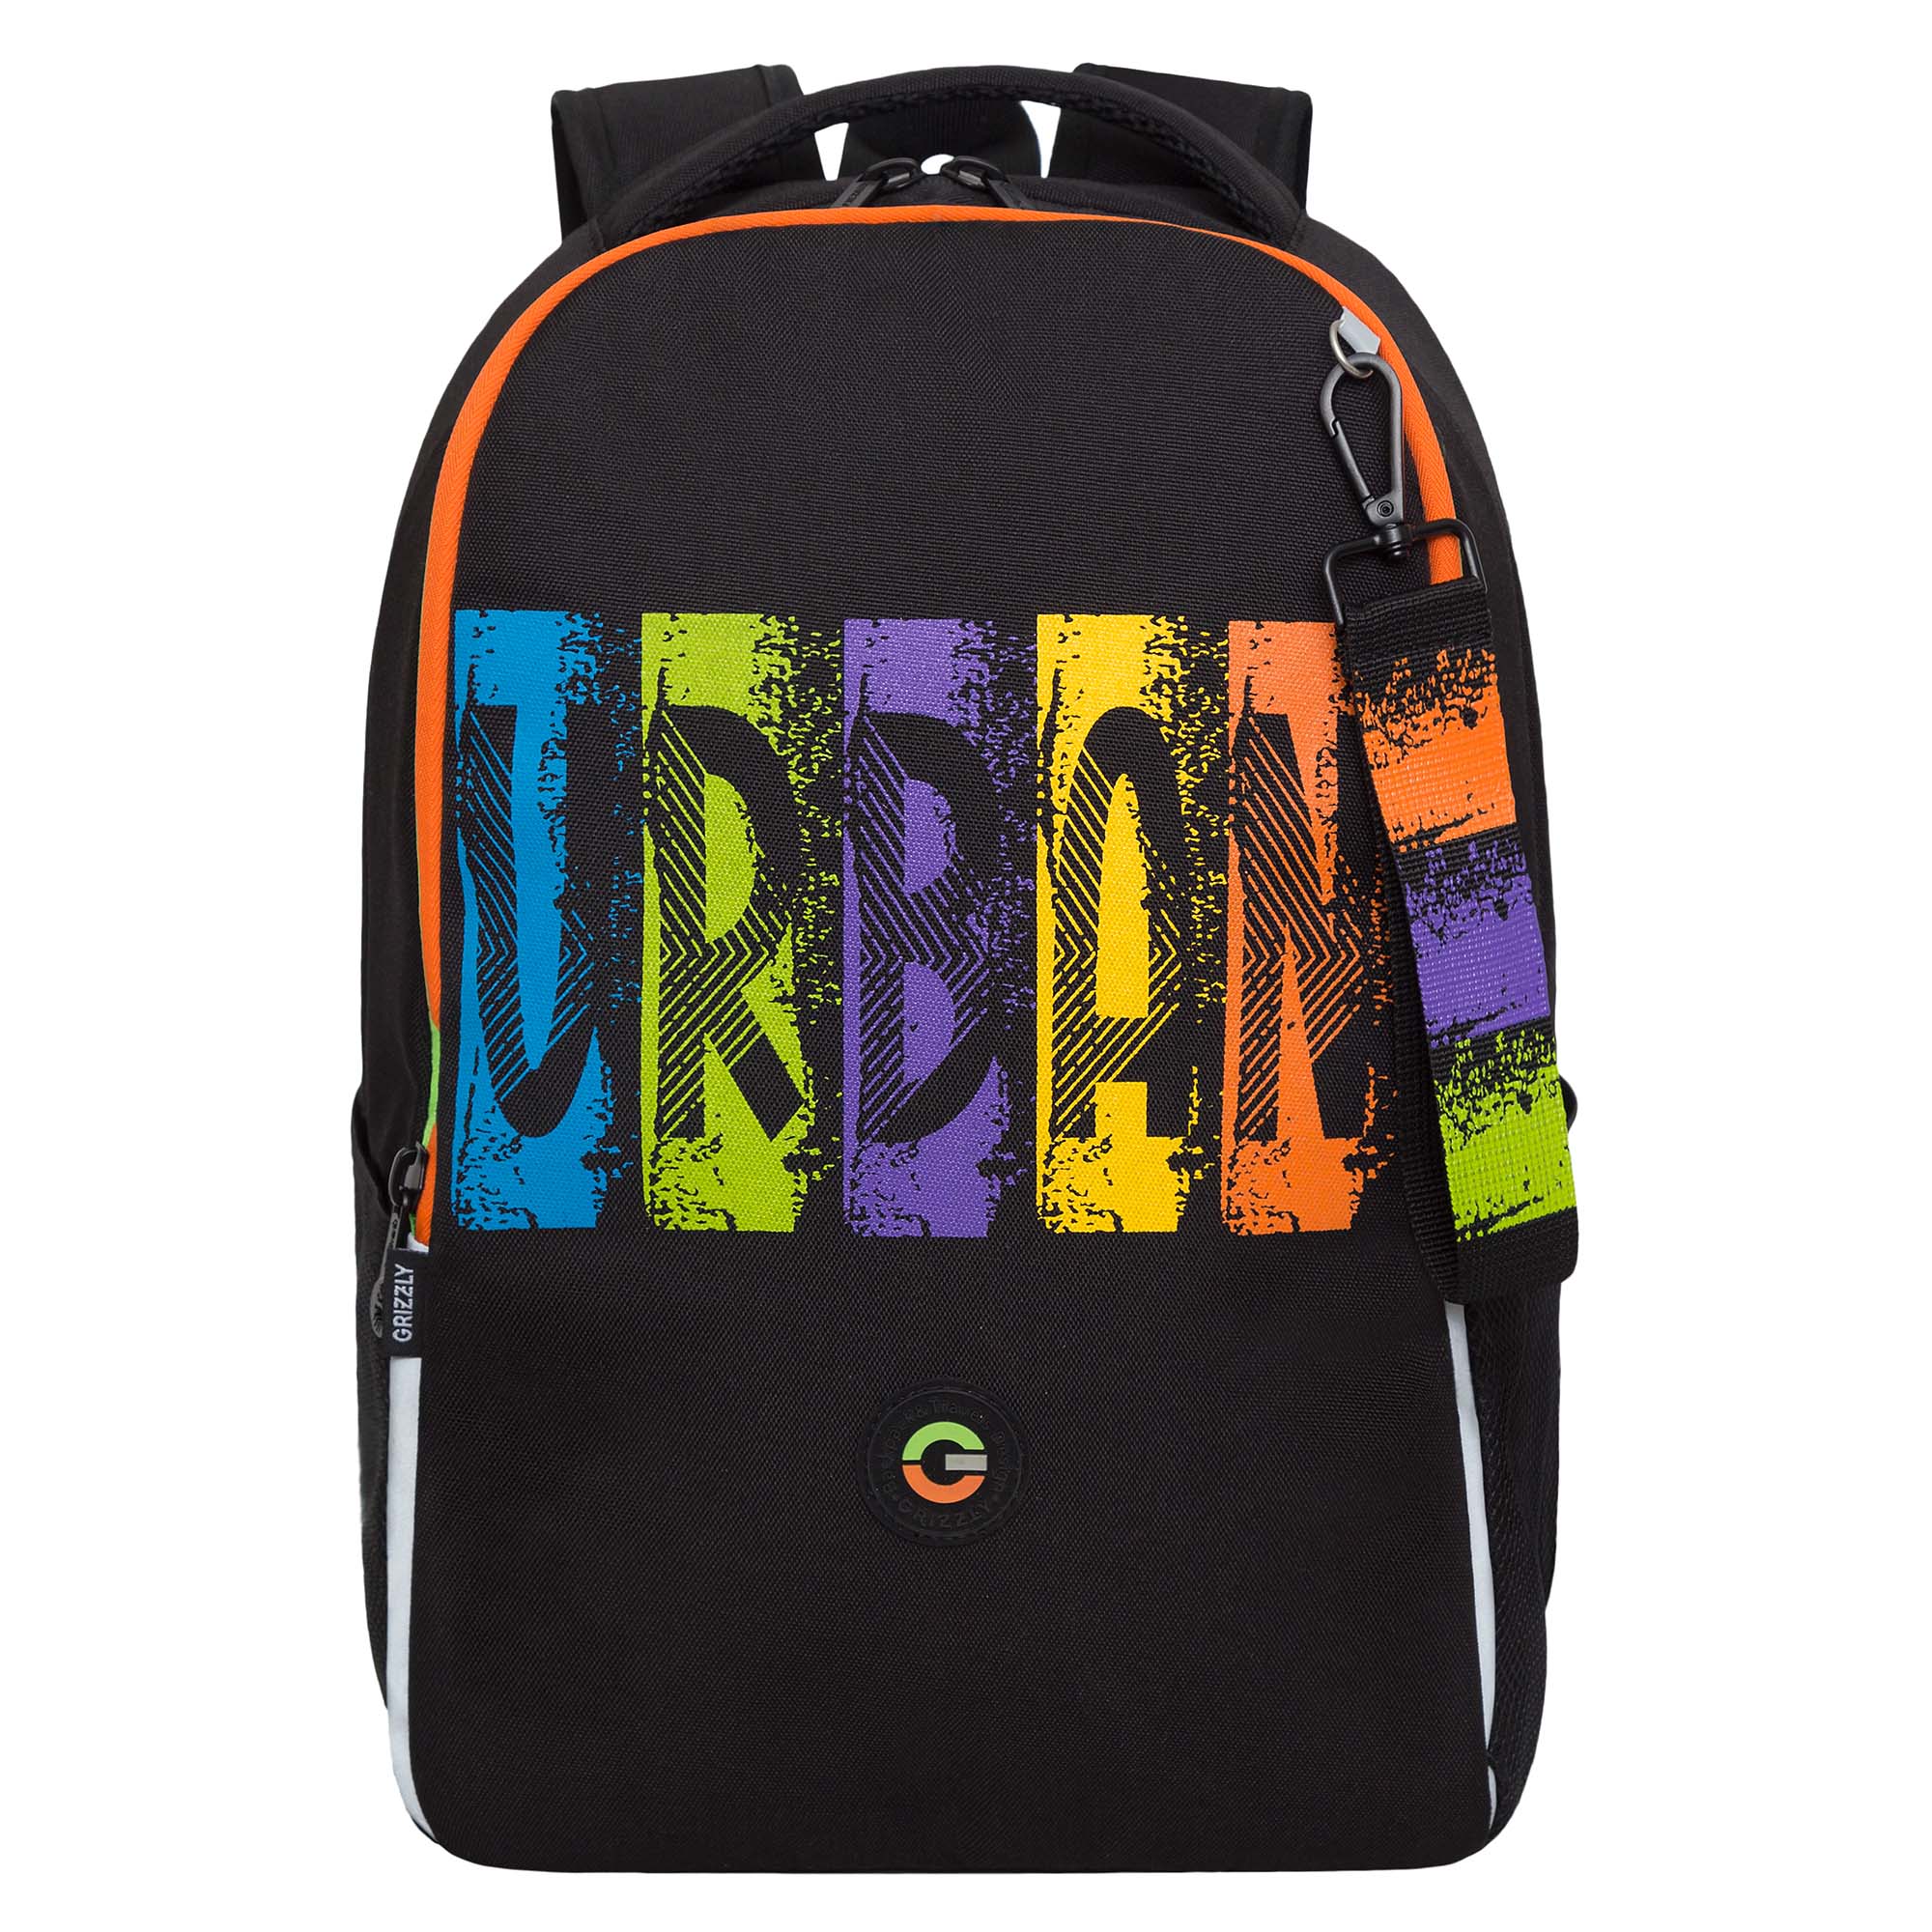 Рюкзак школьный GRIZZLY легкий с жесткой спинкой, 2 отделения, черный, RB-451-3/1 рюкзак школьный grizzly с карманом для ноутбука 13 2 отделения для девочки rg 466 3 2